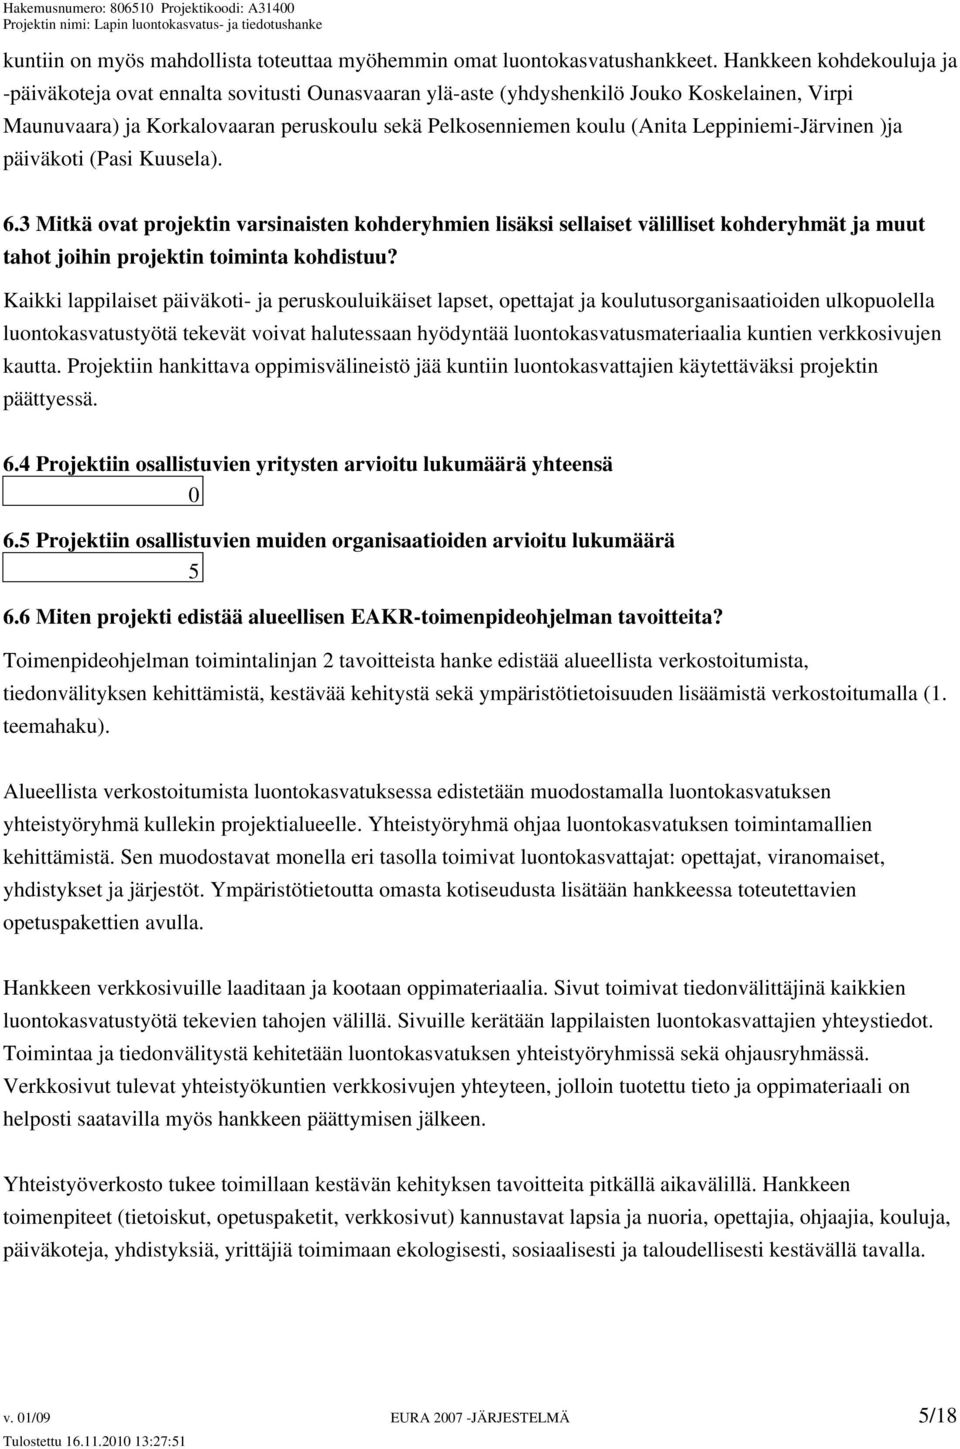 Leppiniemi-Järvinen )ja päiväkoti (Pasi Kuusela). 6.3 Mitkä ovat projektin varsinaisten kohderyhmien lisäksi sellaiset välilliset kohderyhmät ja muut tahot joihin projektin toiminta kohdistuu?